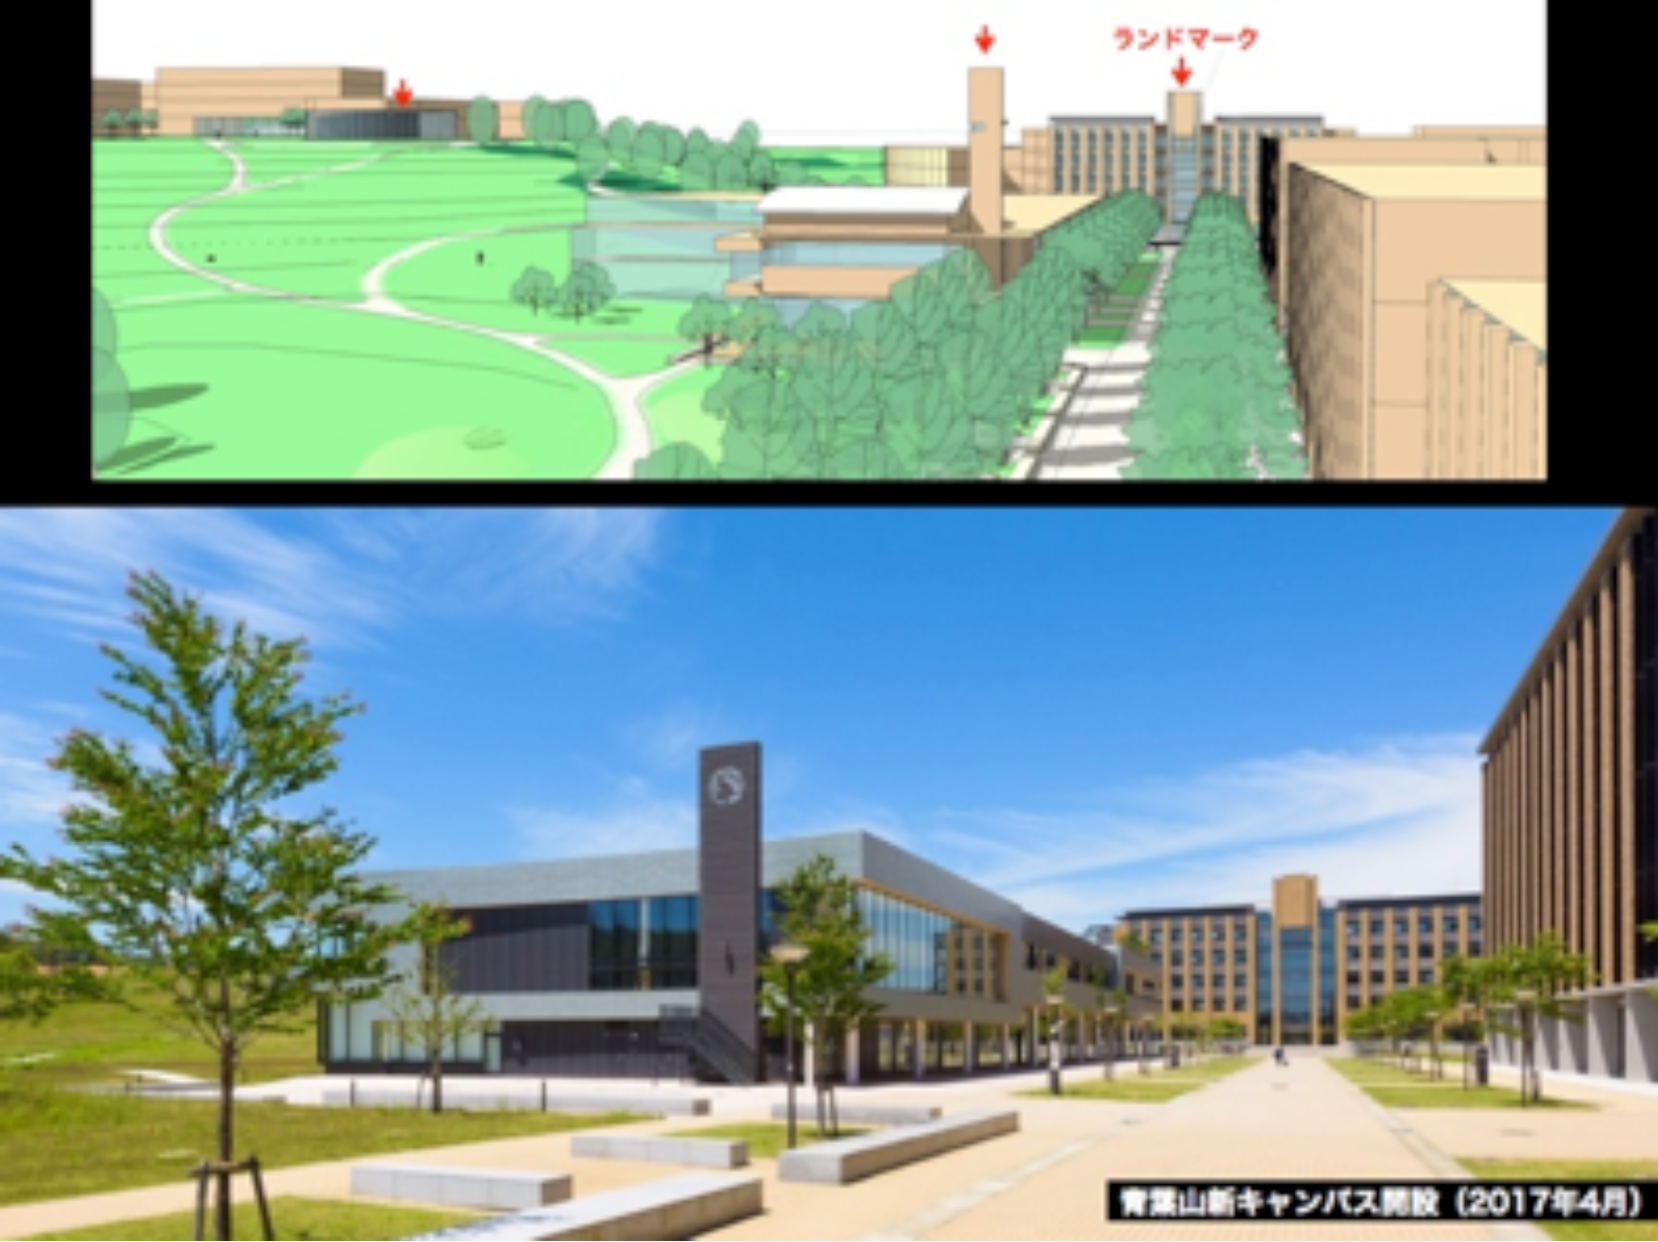 「東北大学の新キャンパスとまちづくり」スライド